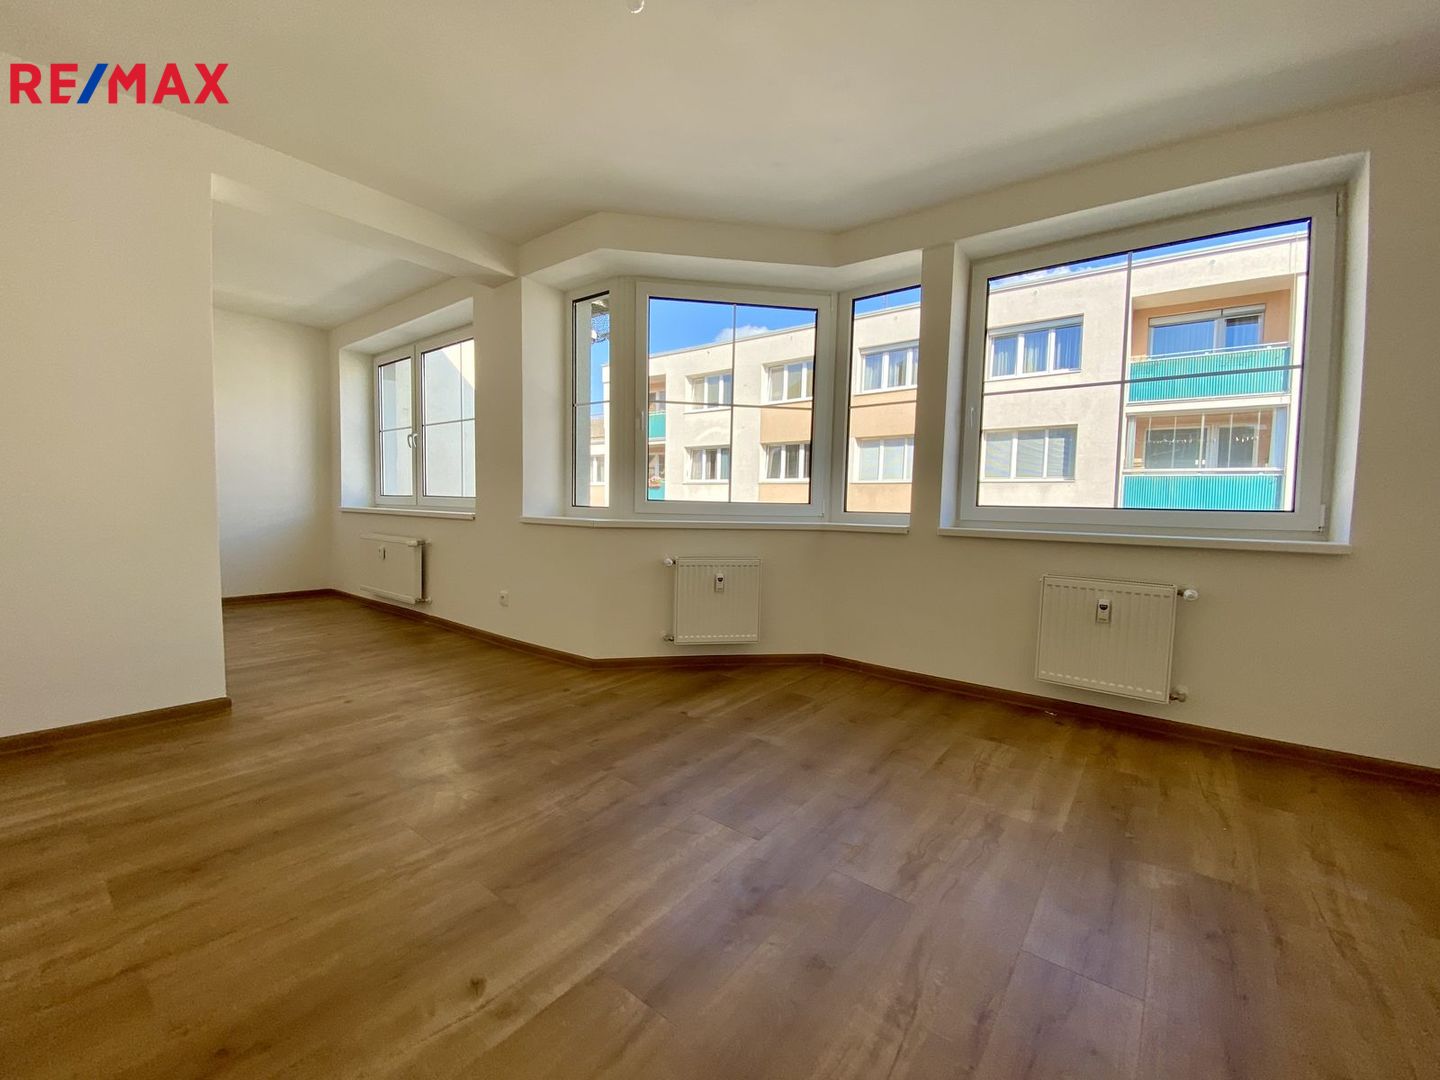 Prodej bytu 2+kk v osobním vlastnictví 58 m², Praha 4 - Michle